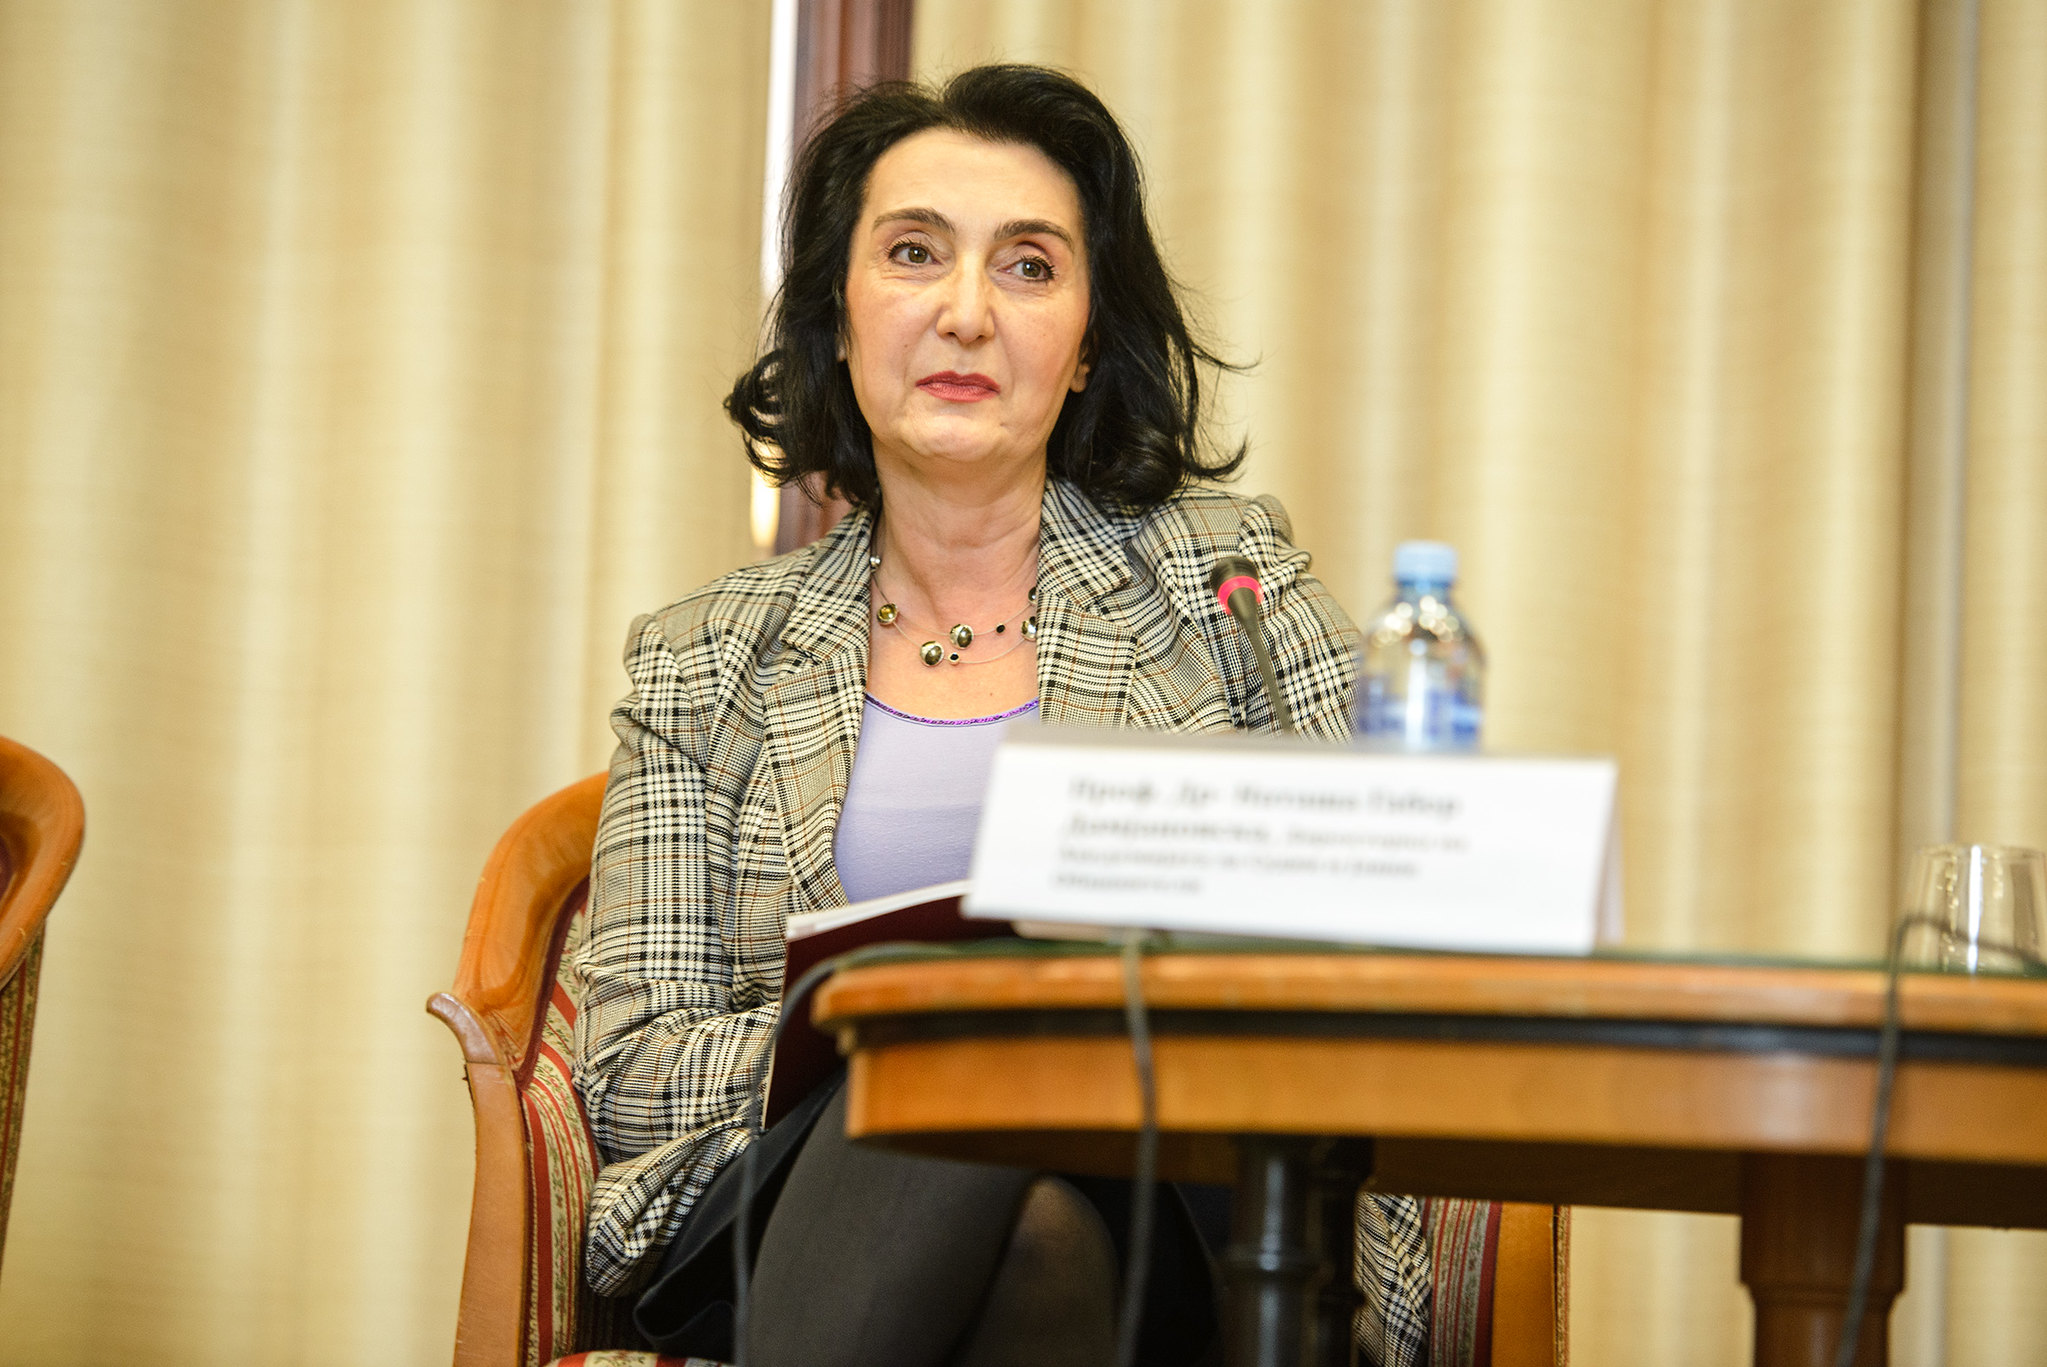 Drejtoresha e Akademisë së Gjykatësve dhe Prokurorëve, Natasha Gaber Damjanovska, foto: Vanço Xhambaski